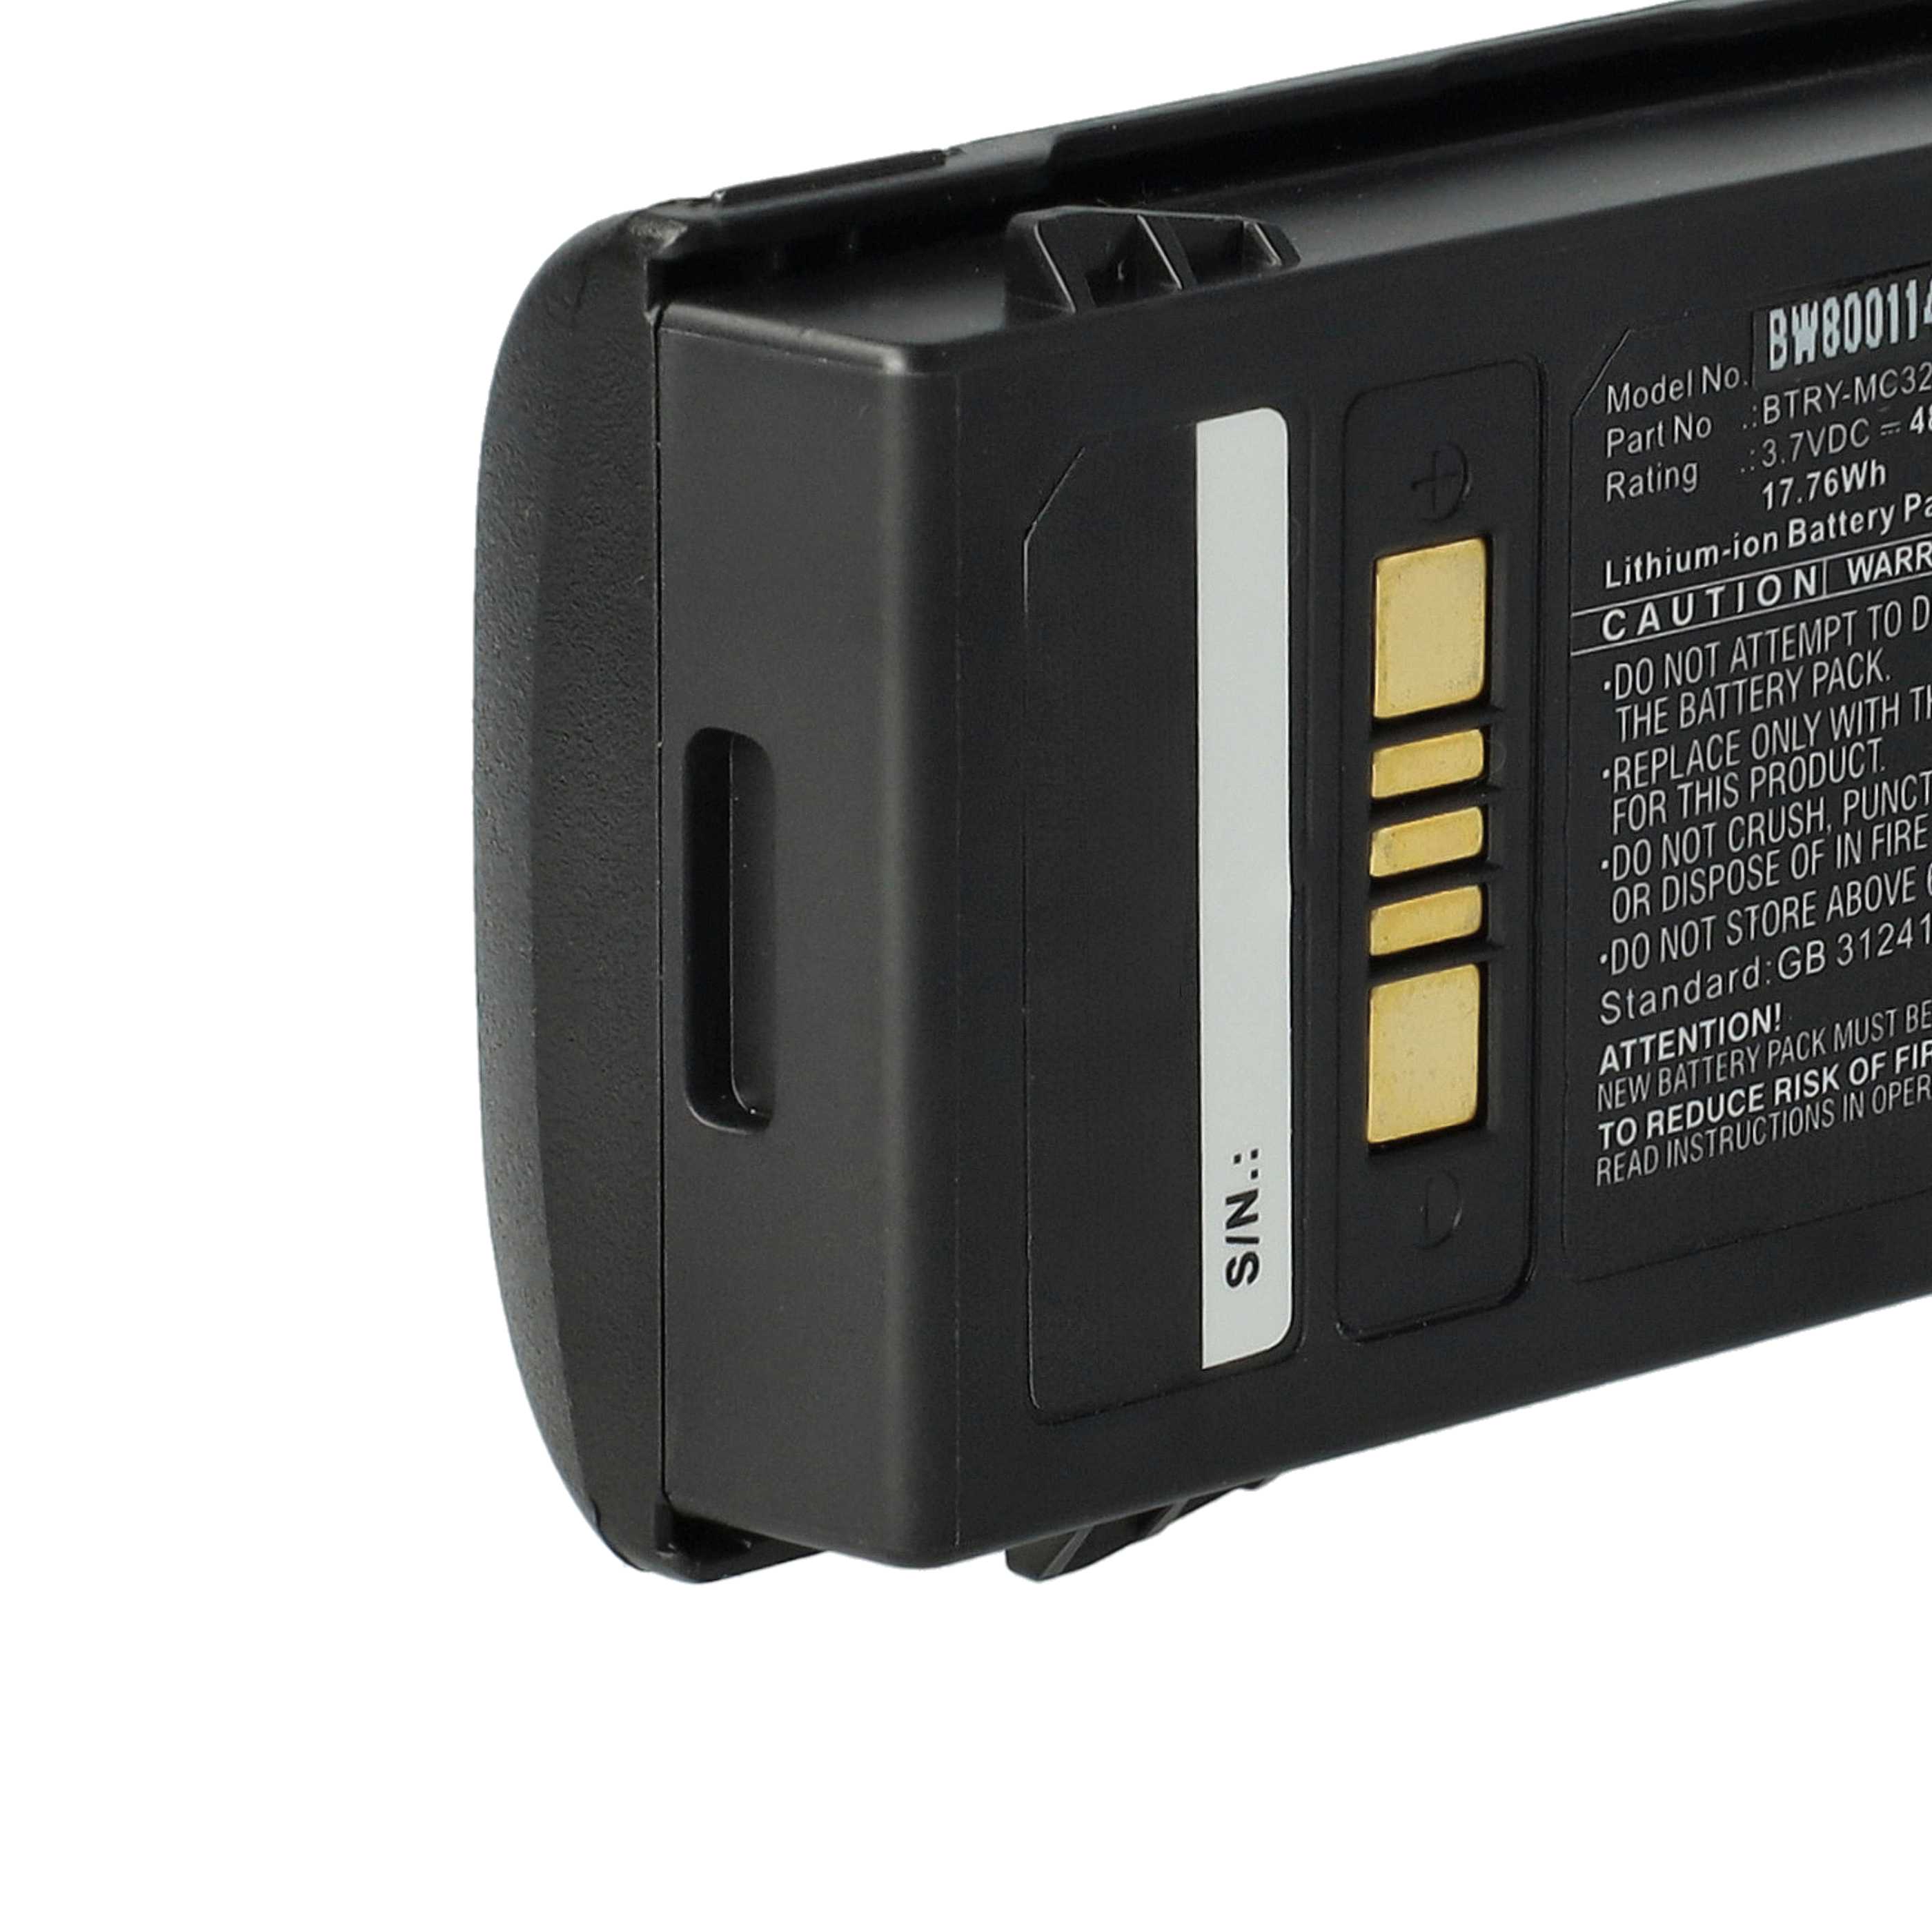 Batería reemplaza Motorola BTRY-MC32-01-01 para escáner de código de barras Motorola - 4800 mAh 3,7 V Li-Ion